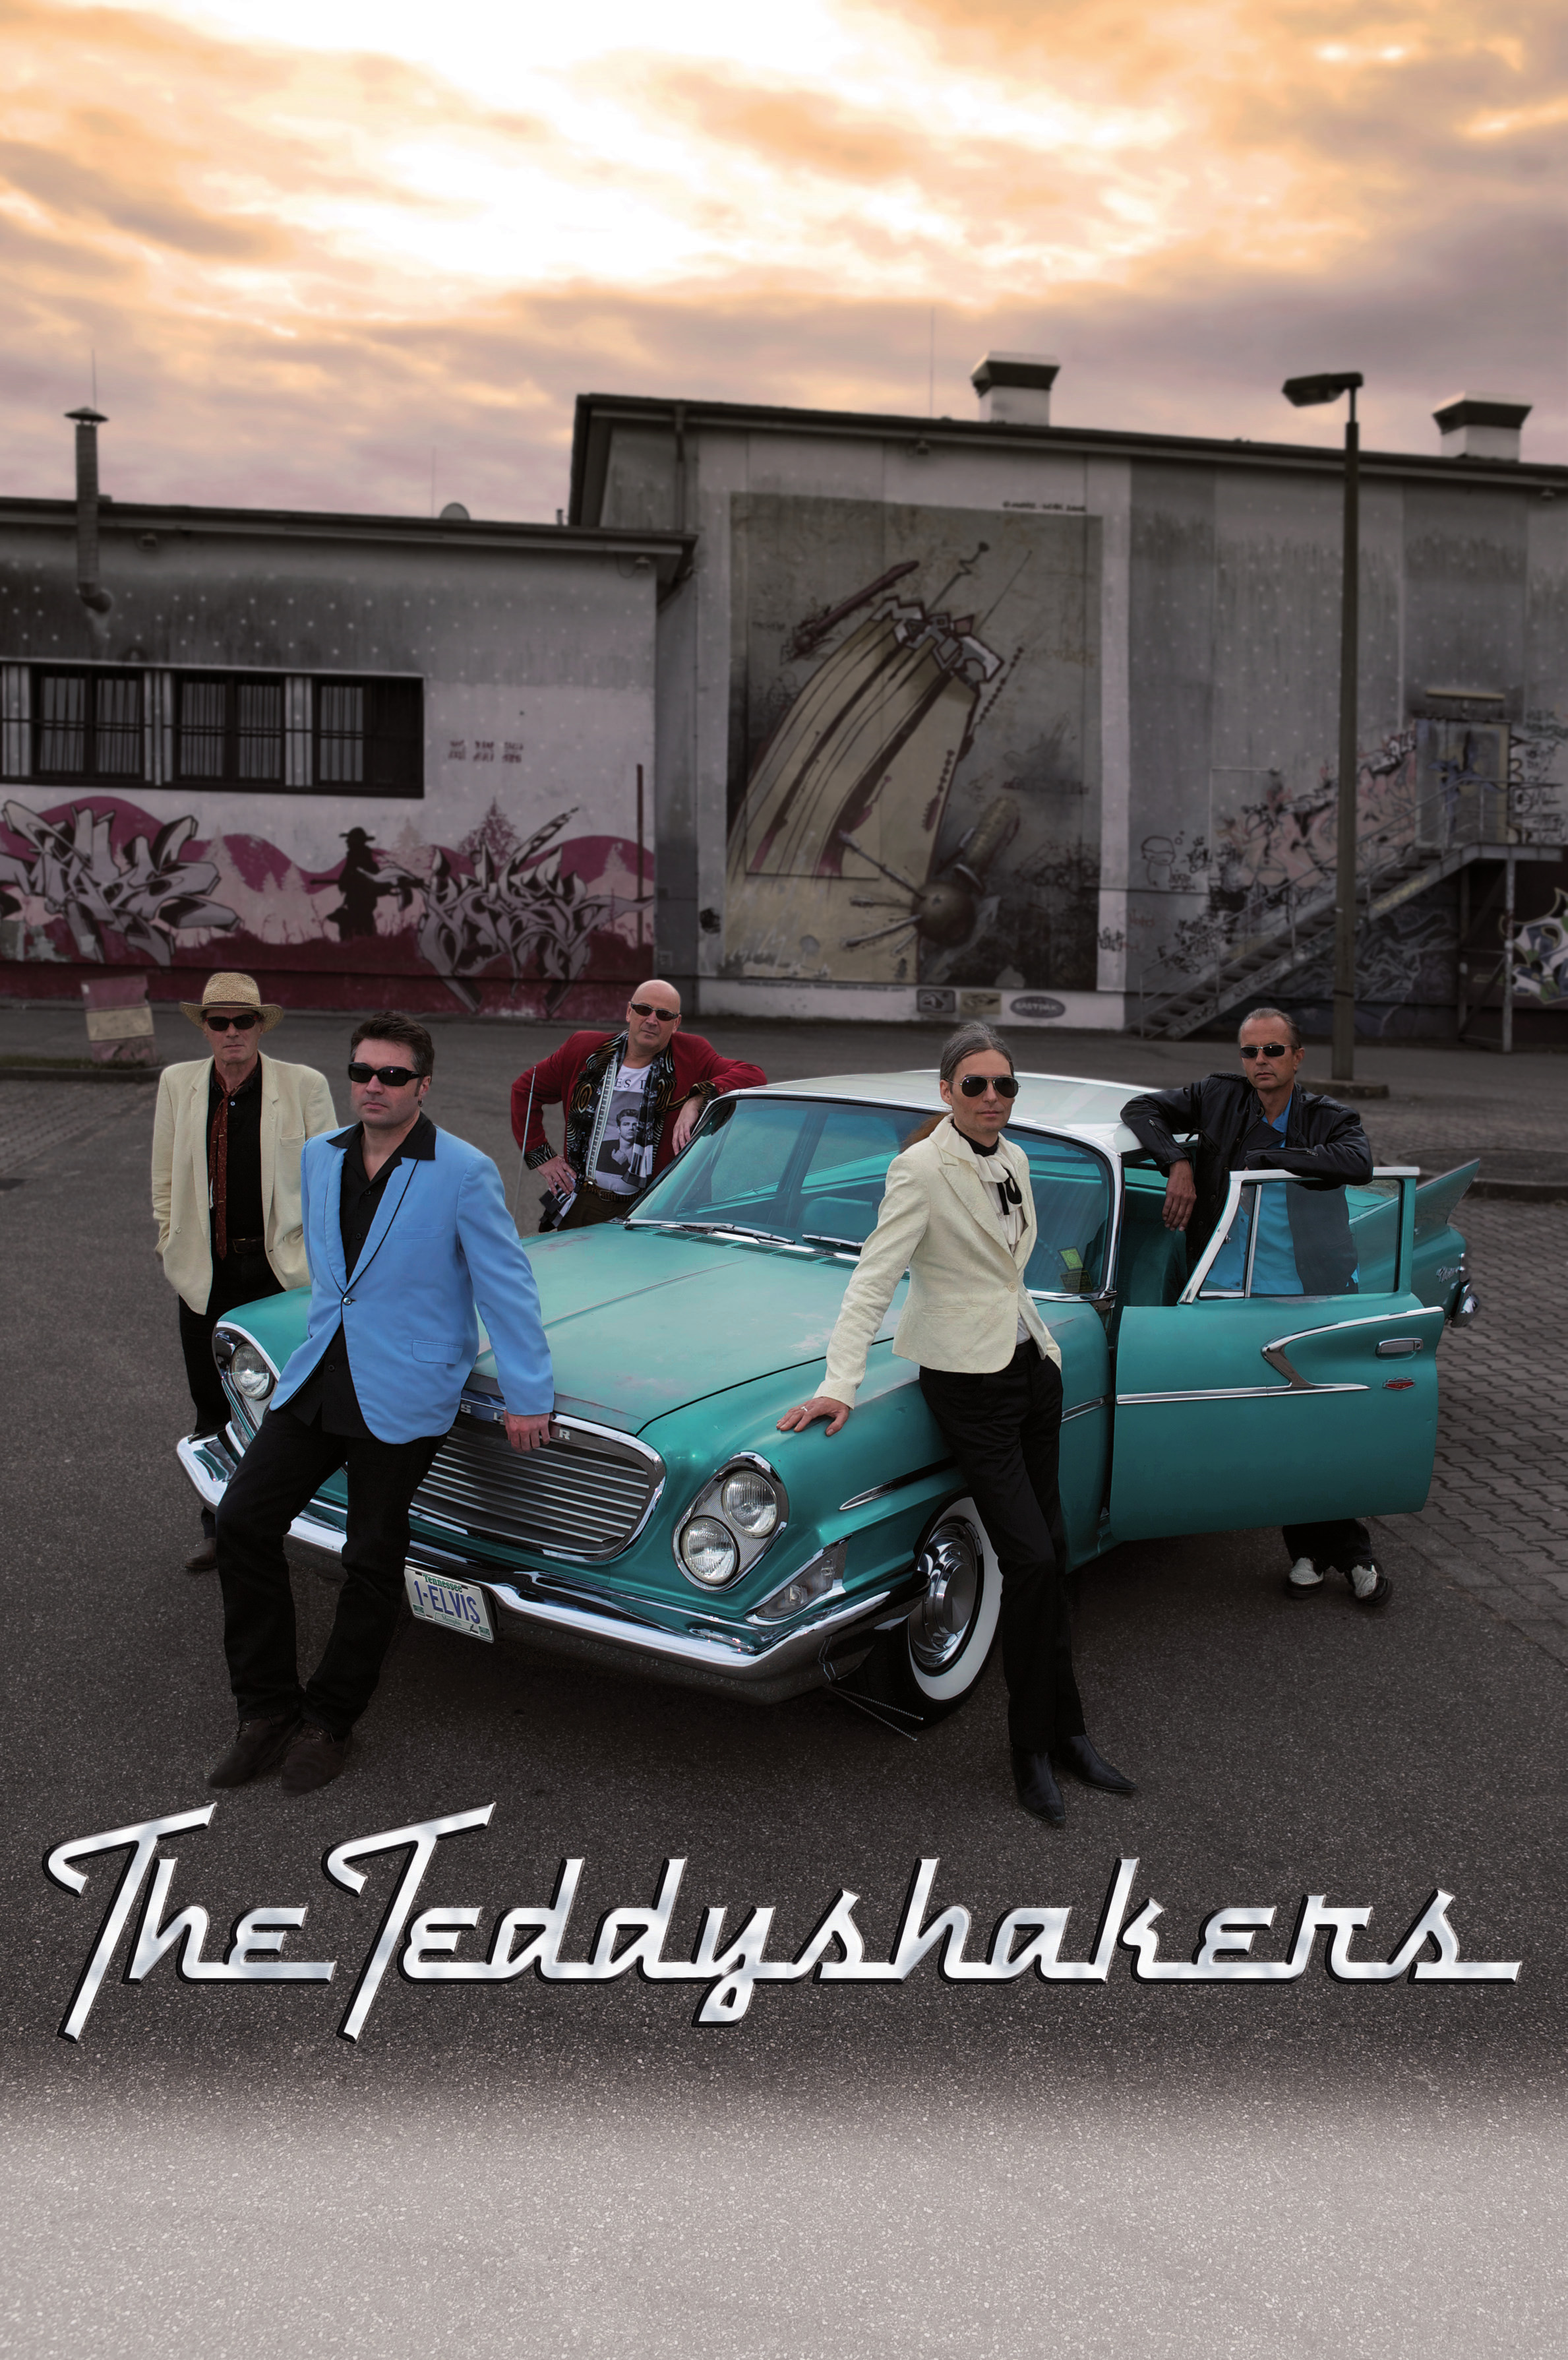 The Teddyshakers